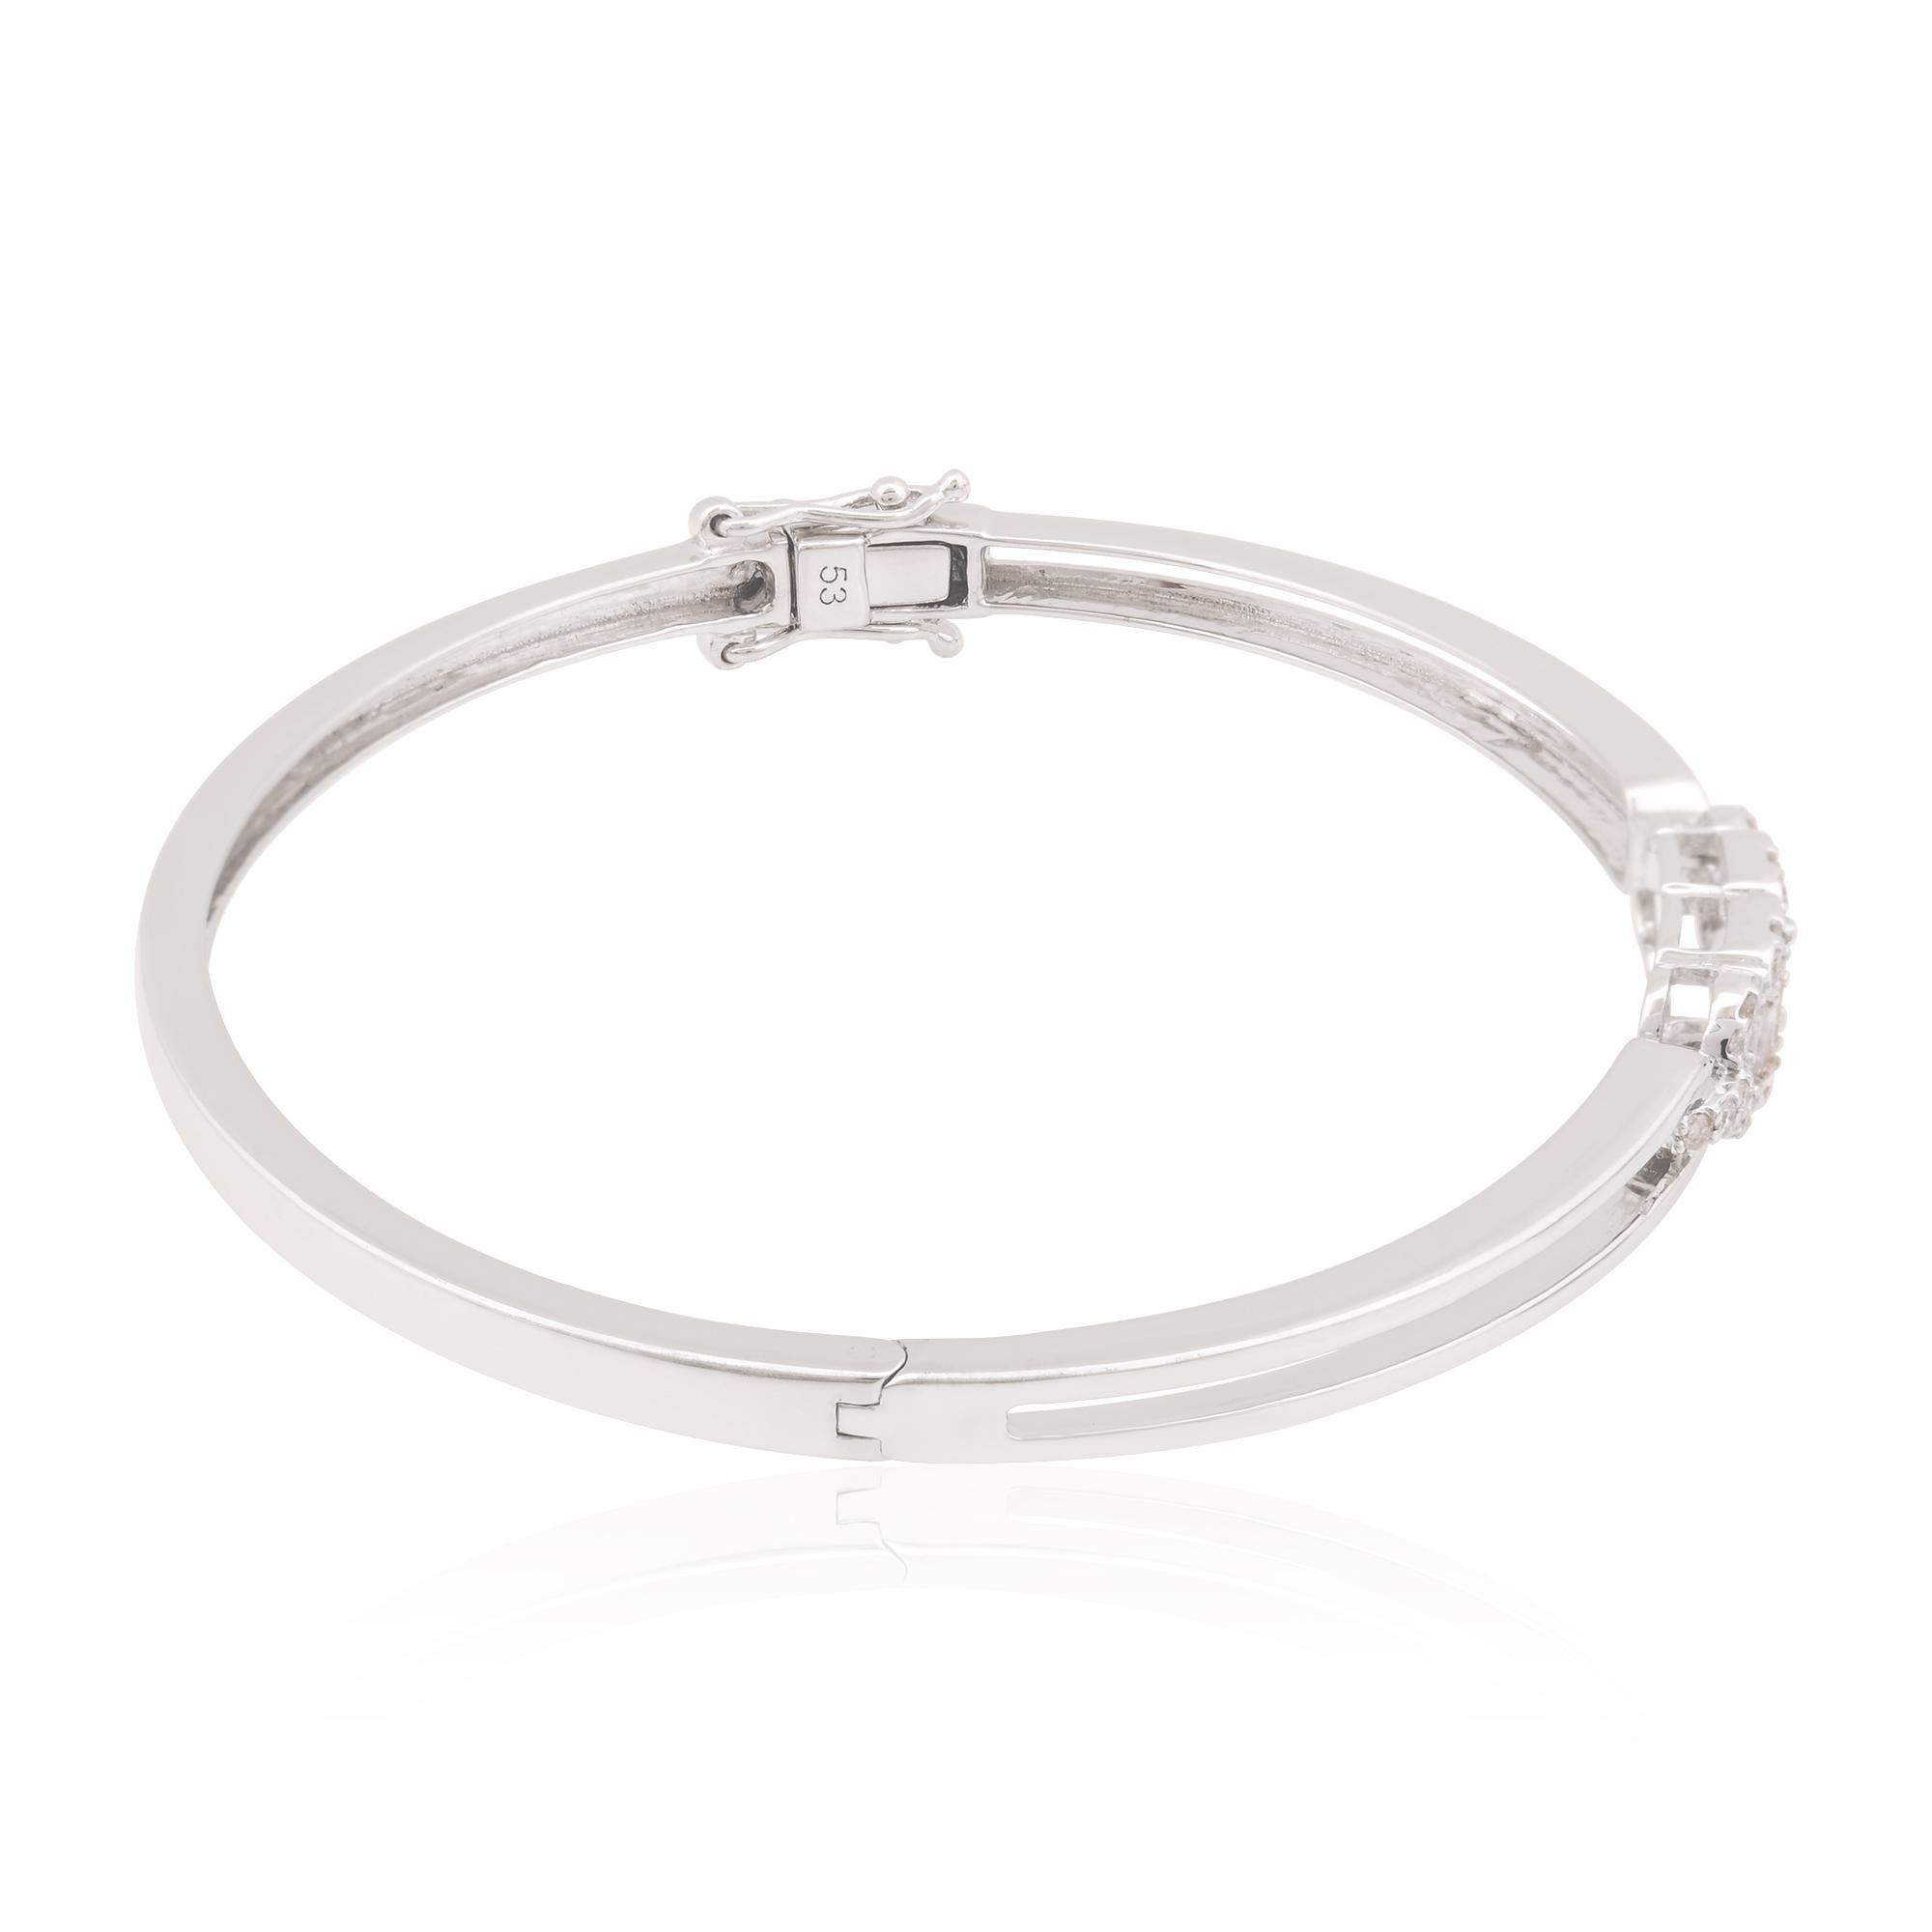 Dieses Baguette-Diamantarmband ist das perfekte Accessoire sowohl für formelle als auch für legere Anlässe. Sie wertet jedes Outfit mühelos auf und verleiht ihm einen Hauch von Glanz und Raffinesse. Es ist ein Symbol für Eleganz und Luxus, ein